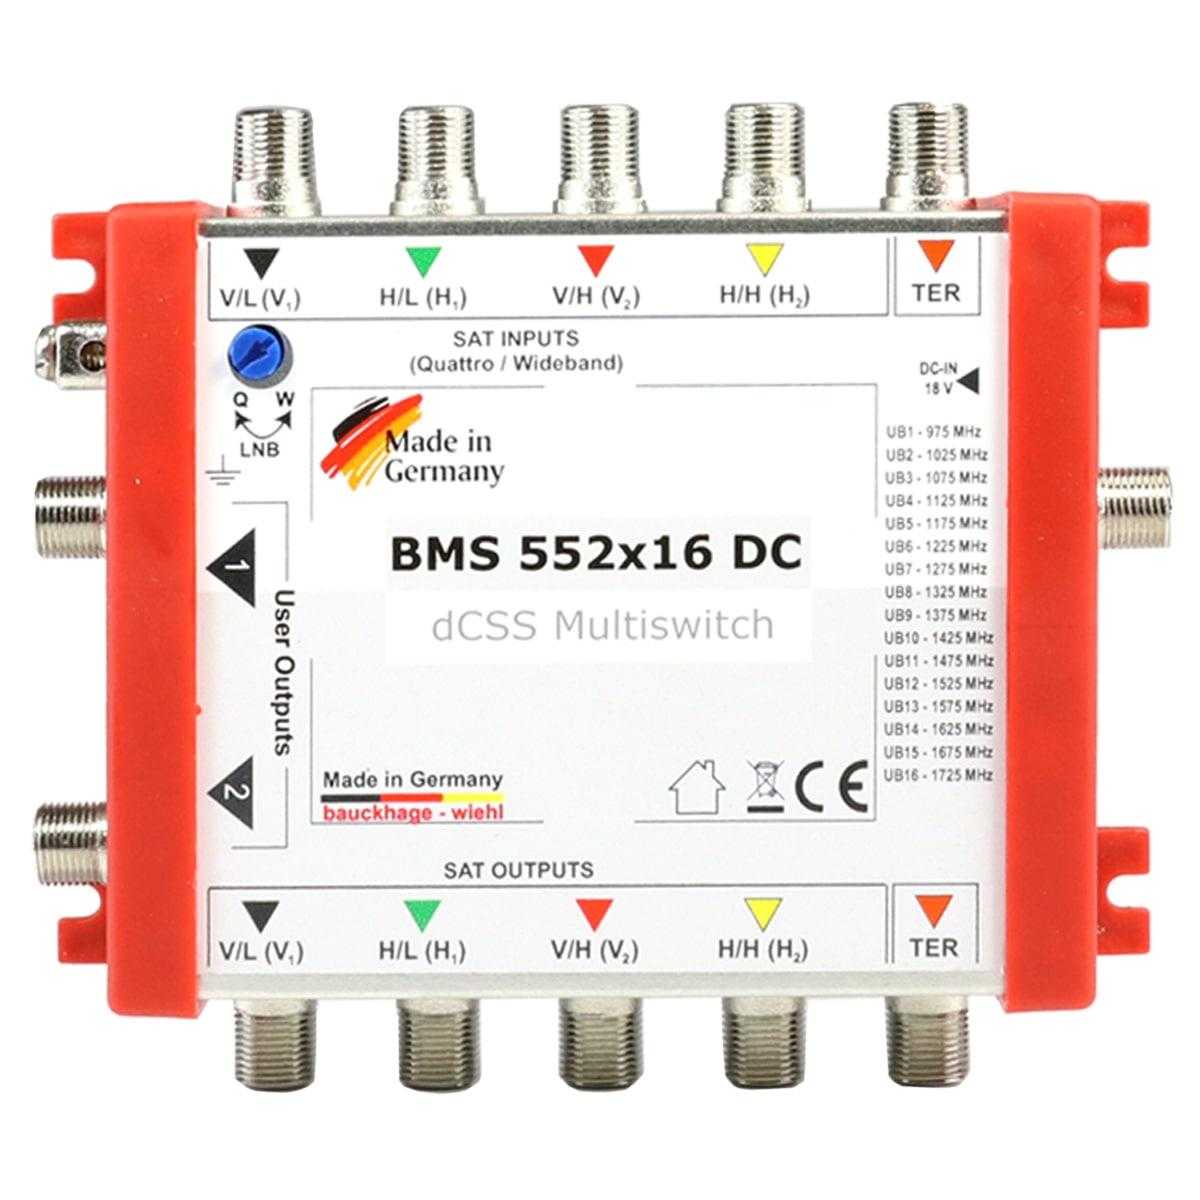 BMS 552x16 DC Multischalter 5/16 Kaskadierbar (dCSS für 2x 16 Teilnehmer) von Bauckhage